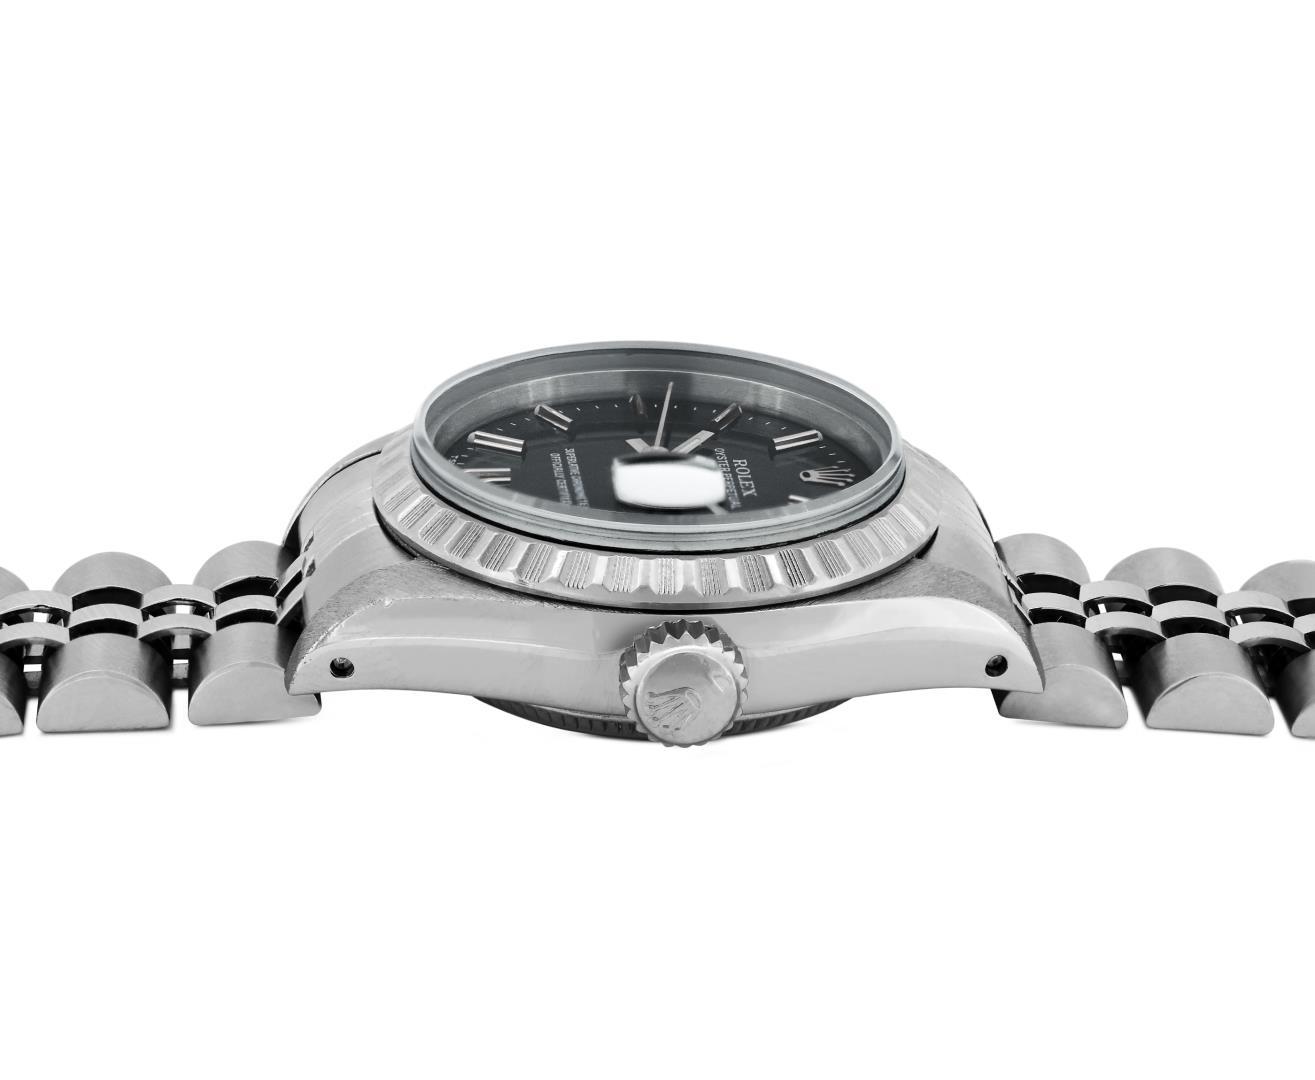 Rolex Ladies Stainless Steel Black Index Date Wristwatch With Rolex Box